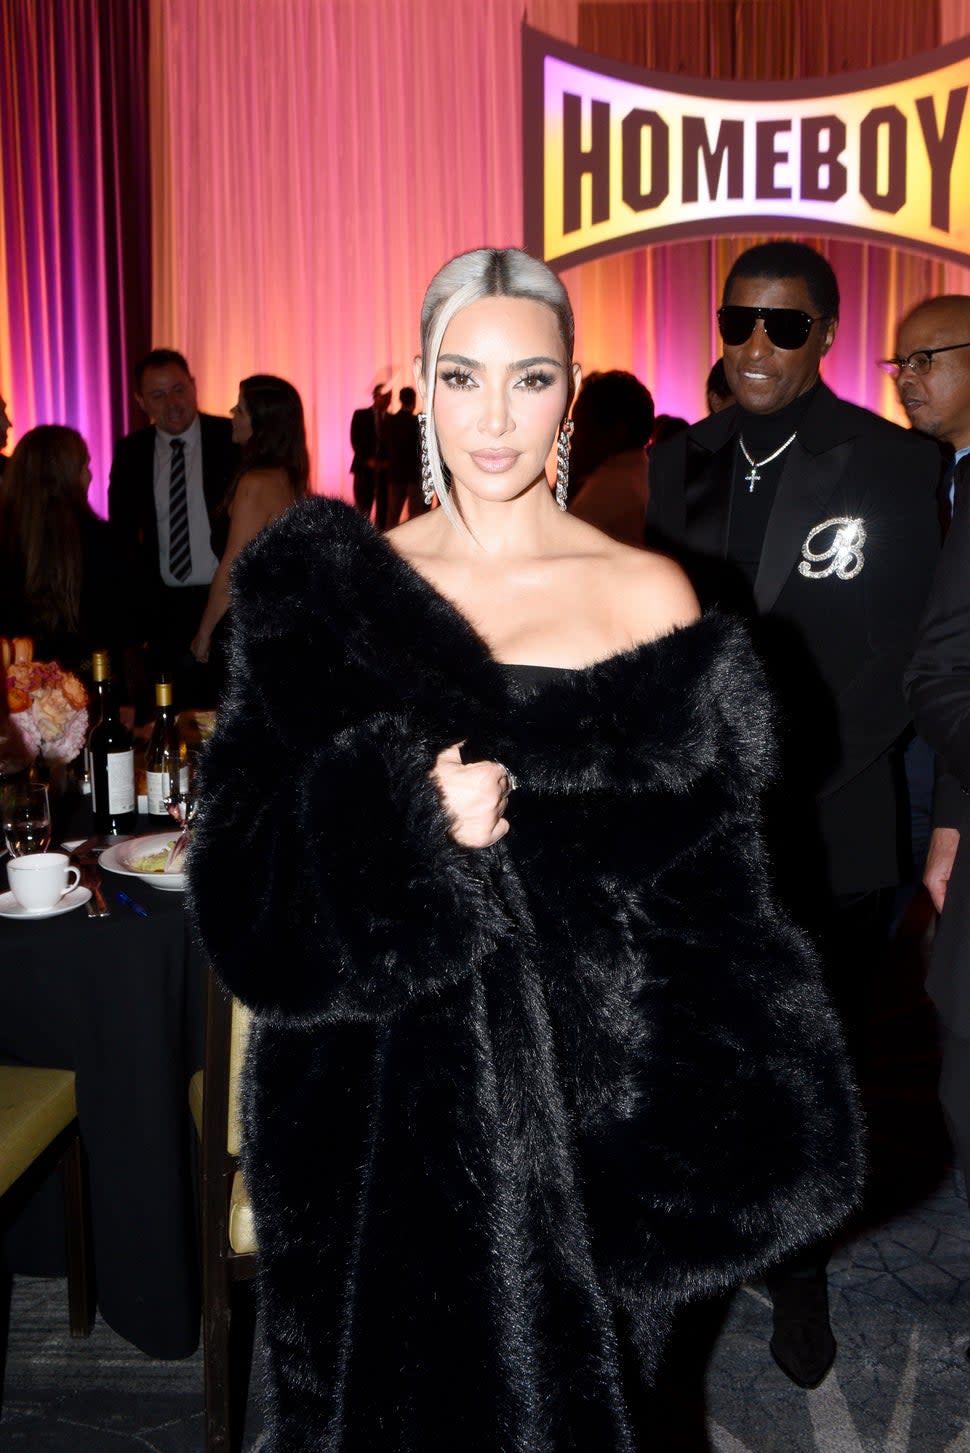 Kim Kardashian shows off blonde hair